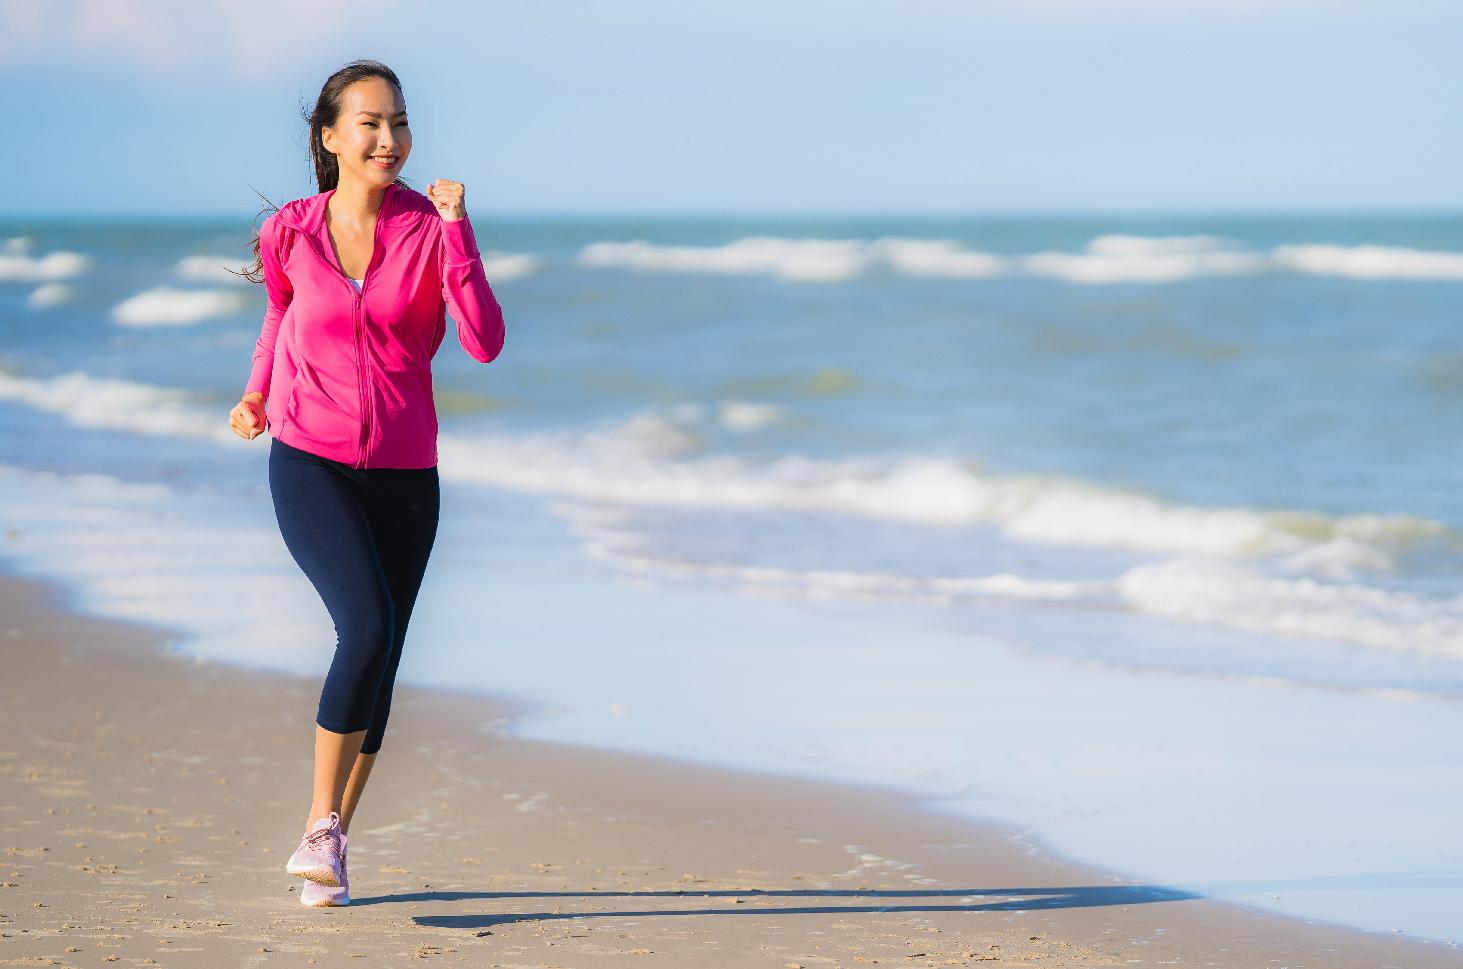 5 ประโยชน์ของการออกกำลังกายเพื่อสุขภาพร่างกาย